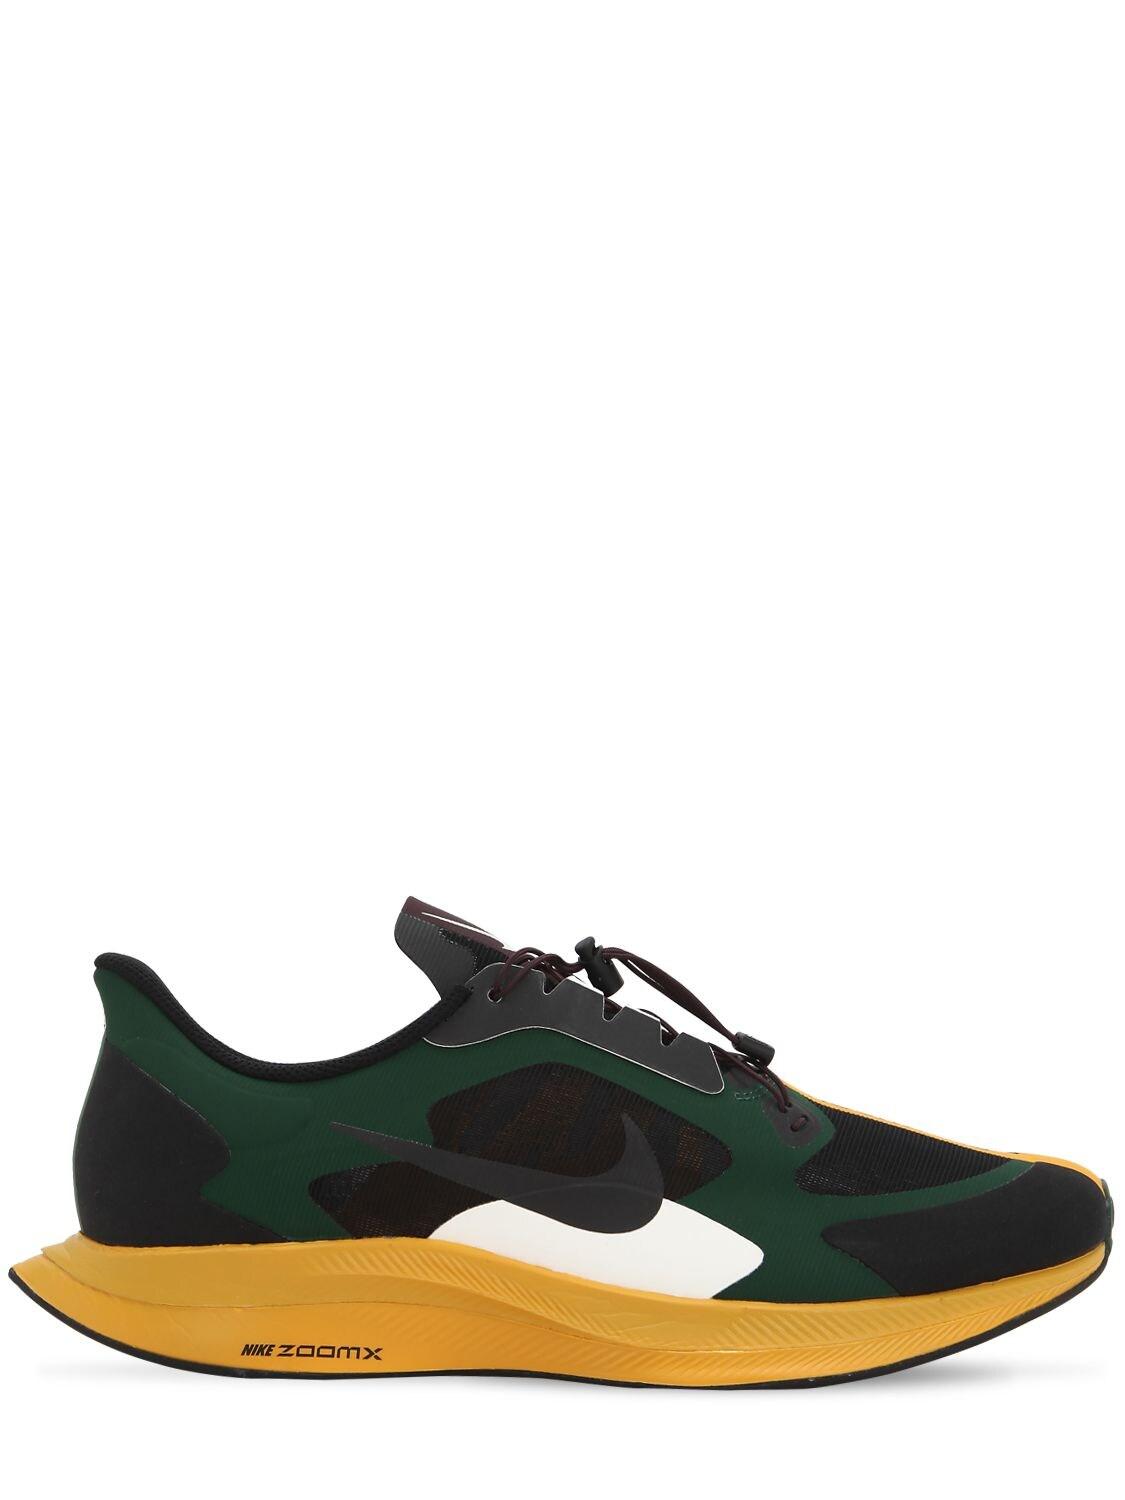 Nike Zoom Pegasus 35 Turbo Gyakusou Sneakers in Green/Black (Black) - Lyst